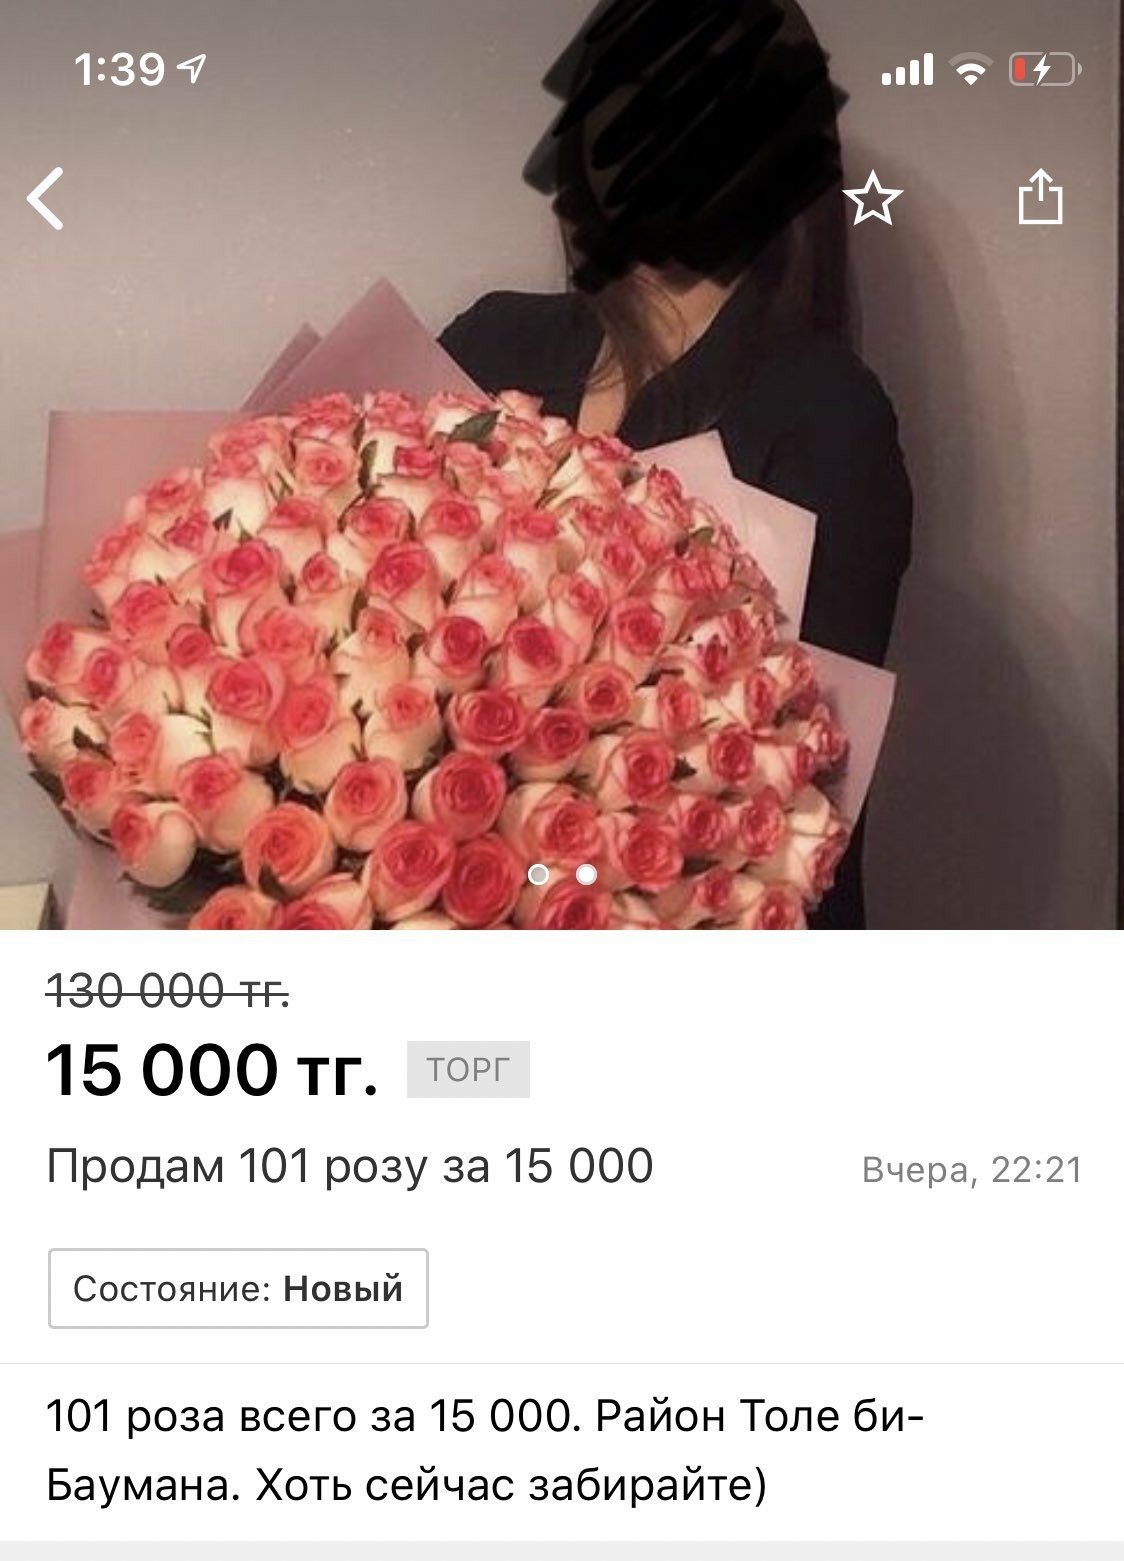 B - business lady - Kazakhstan, Almaty, Flowers, Bouquet